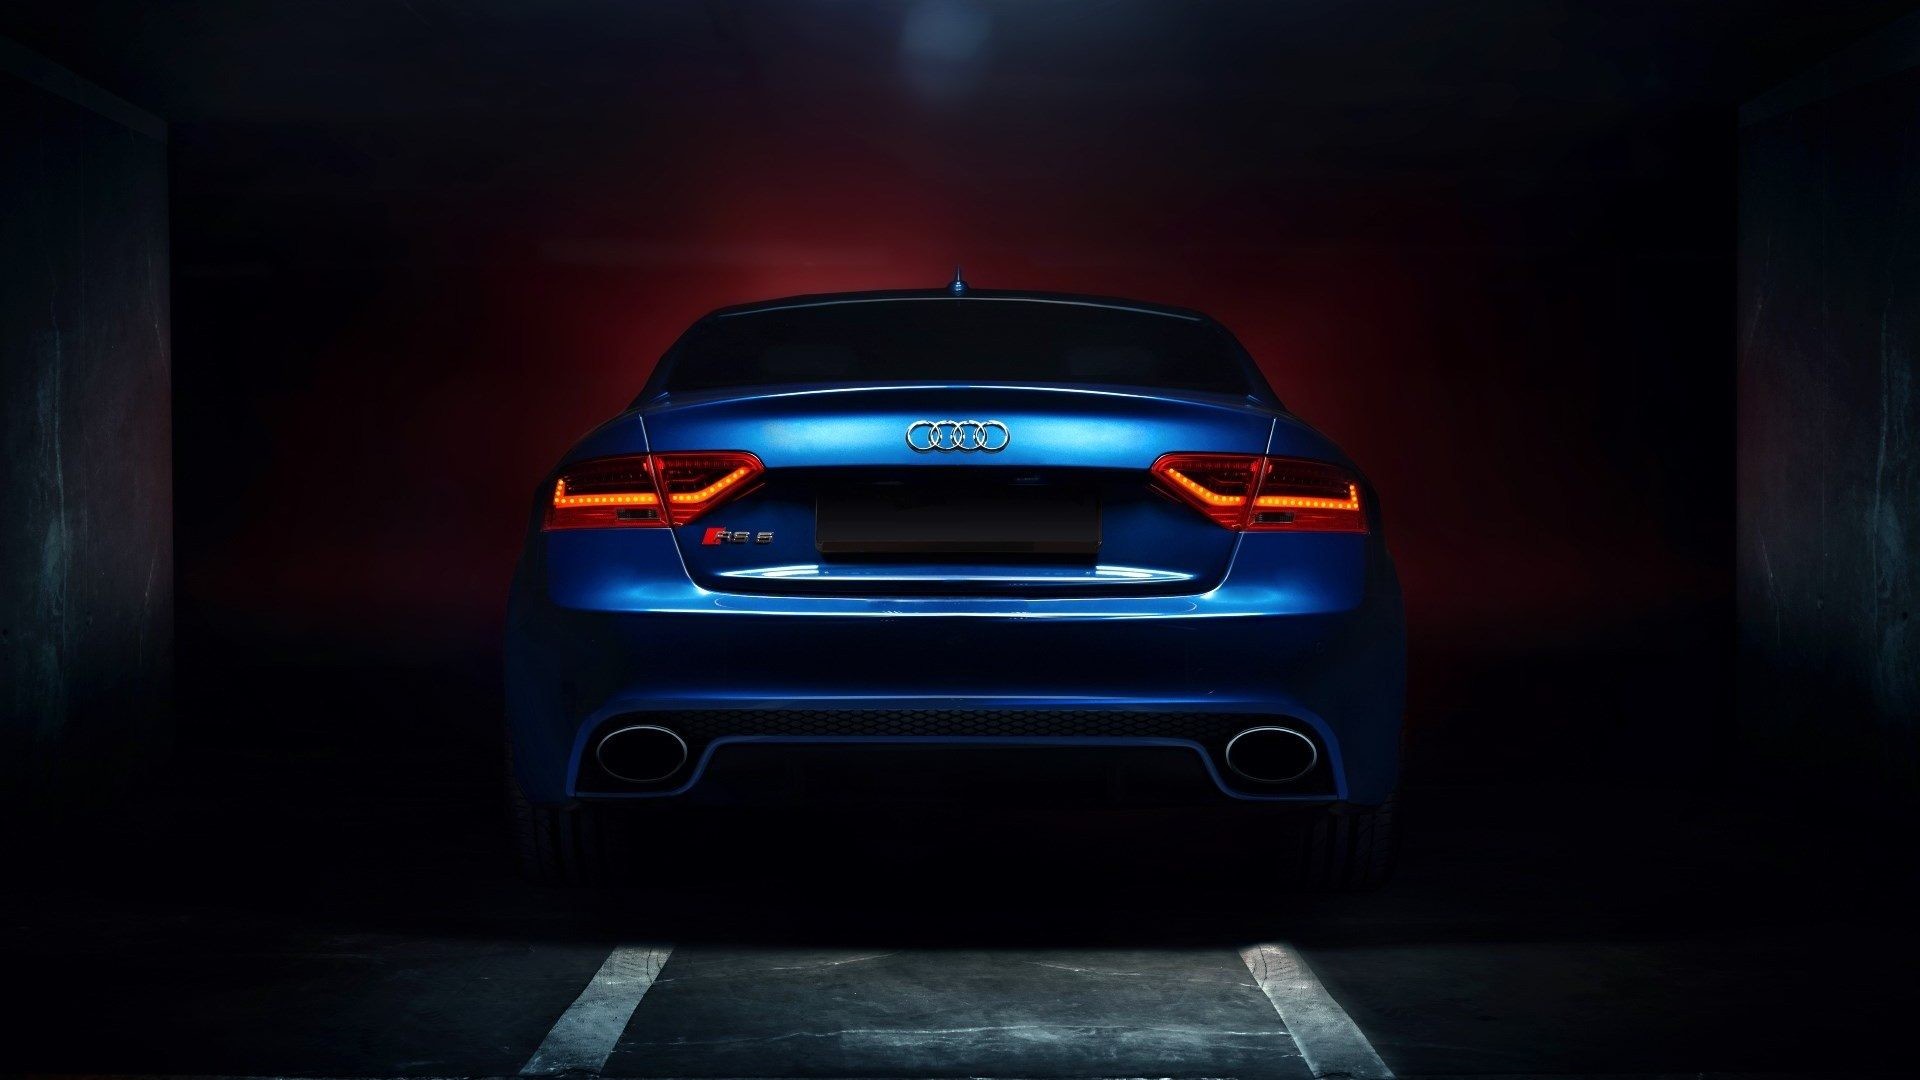 … RS5 Audi Car Wallpaper For Desktop amp Mobile Free Download